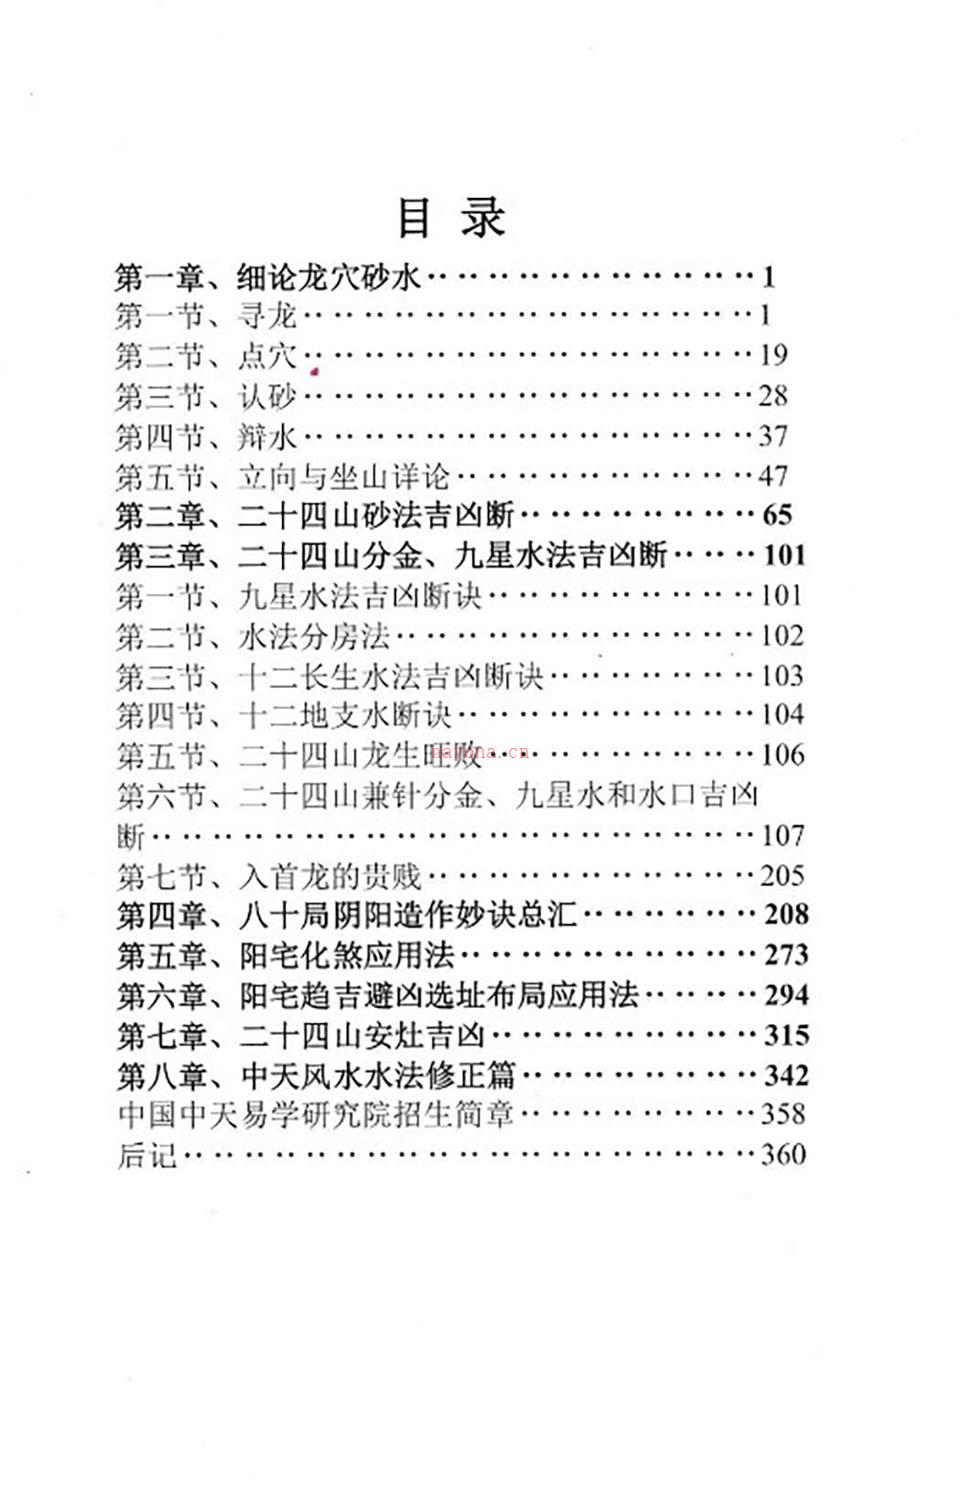 张永红中天风水密踪.pdf 百度网盘资源